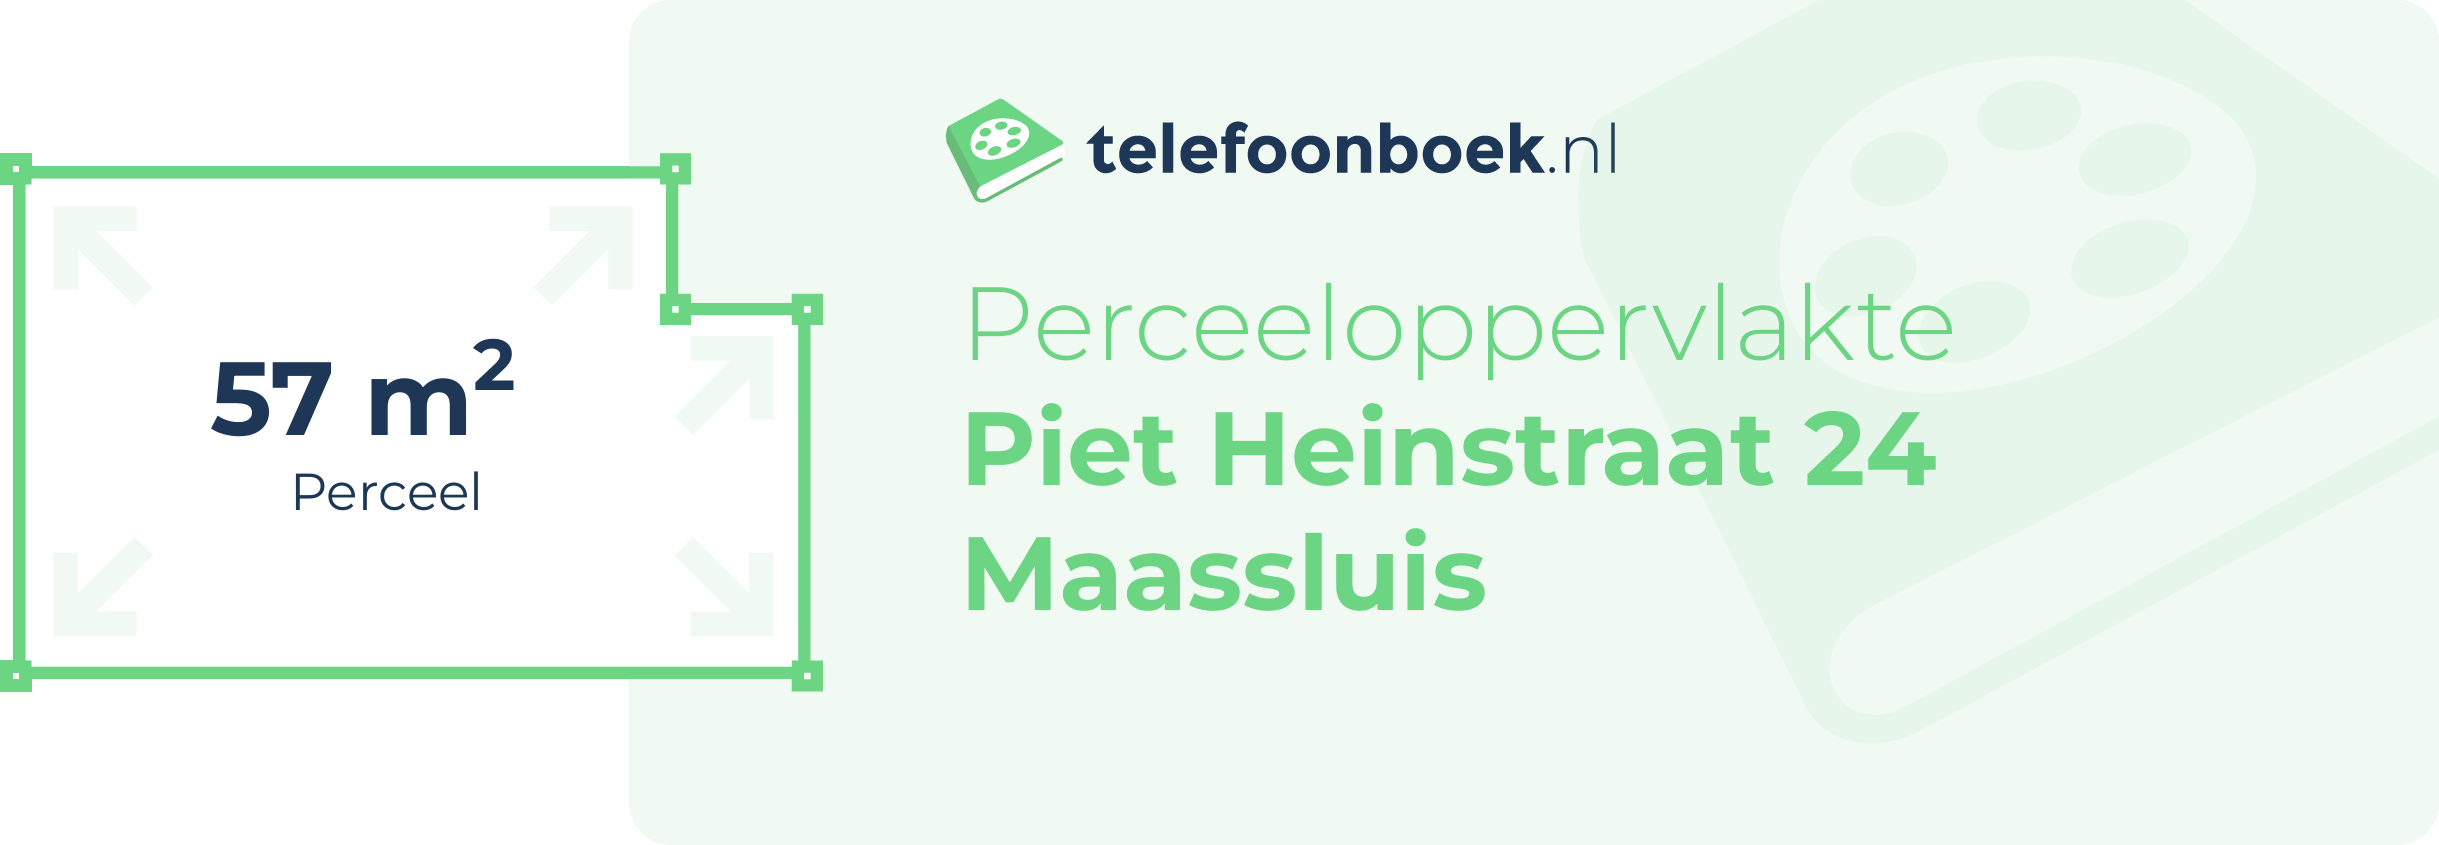 Perceeloppervlakte Piet Heinstraat 24 Maassluis